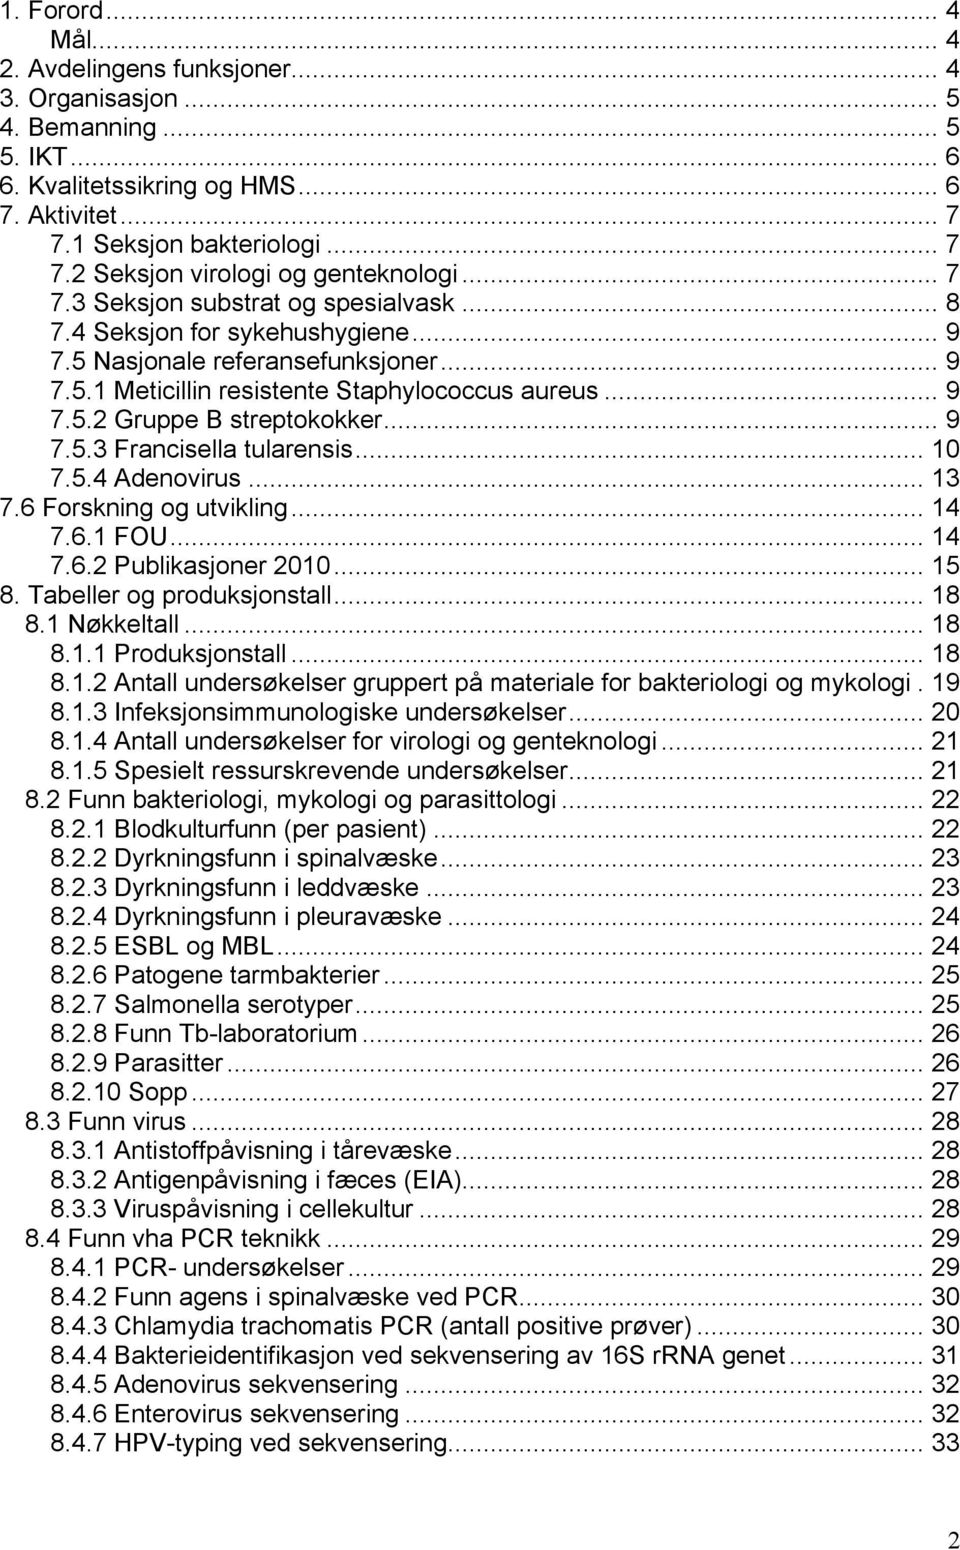 .. 9 7.5.3 Francisella tularensis... 10 7.5.4 Adenovirus... 13 7.6 Forskning og utvikling... 14 7.6.1 FOU... 14 7.6.2 Publikasjoner 2010... 15 8. Tabeller og produksjonstall... 18 8.1 Nøkkeltall.